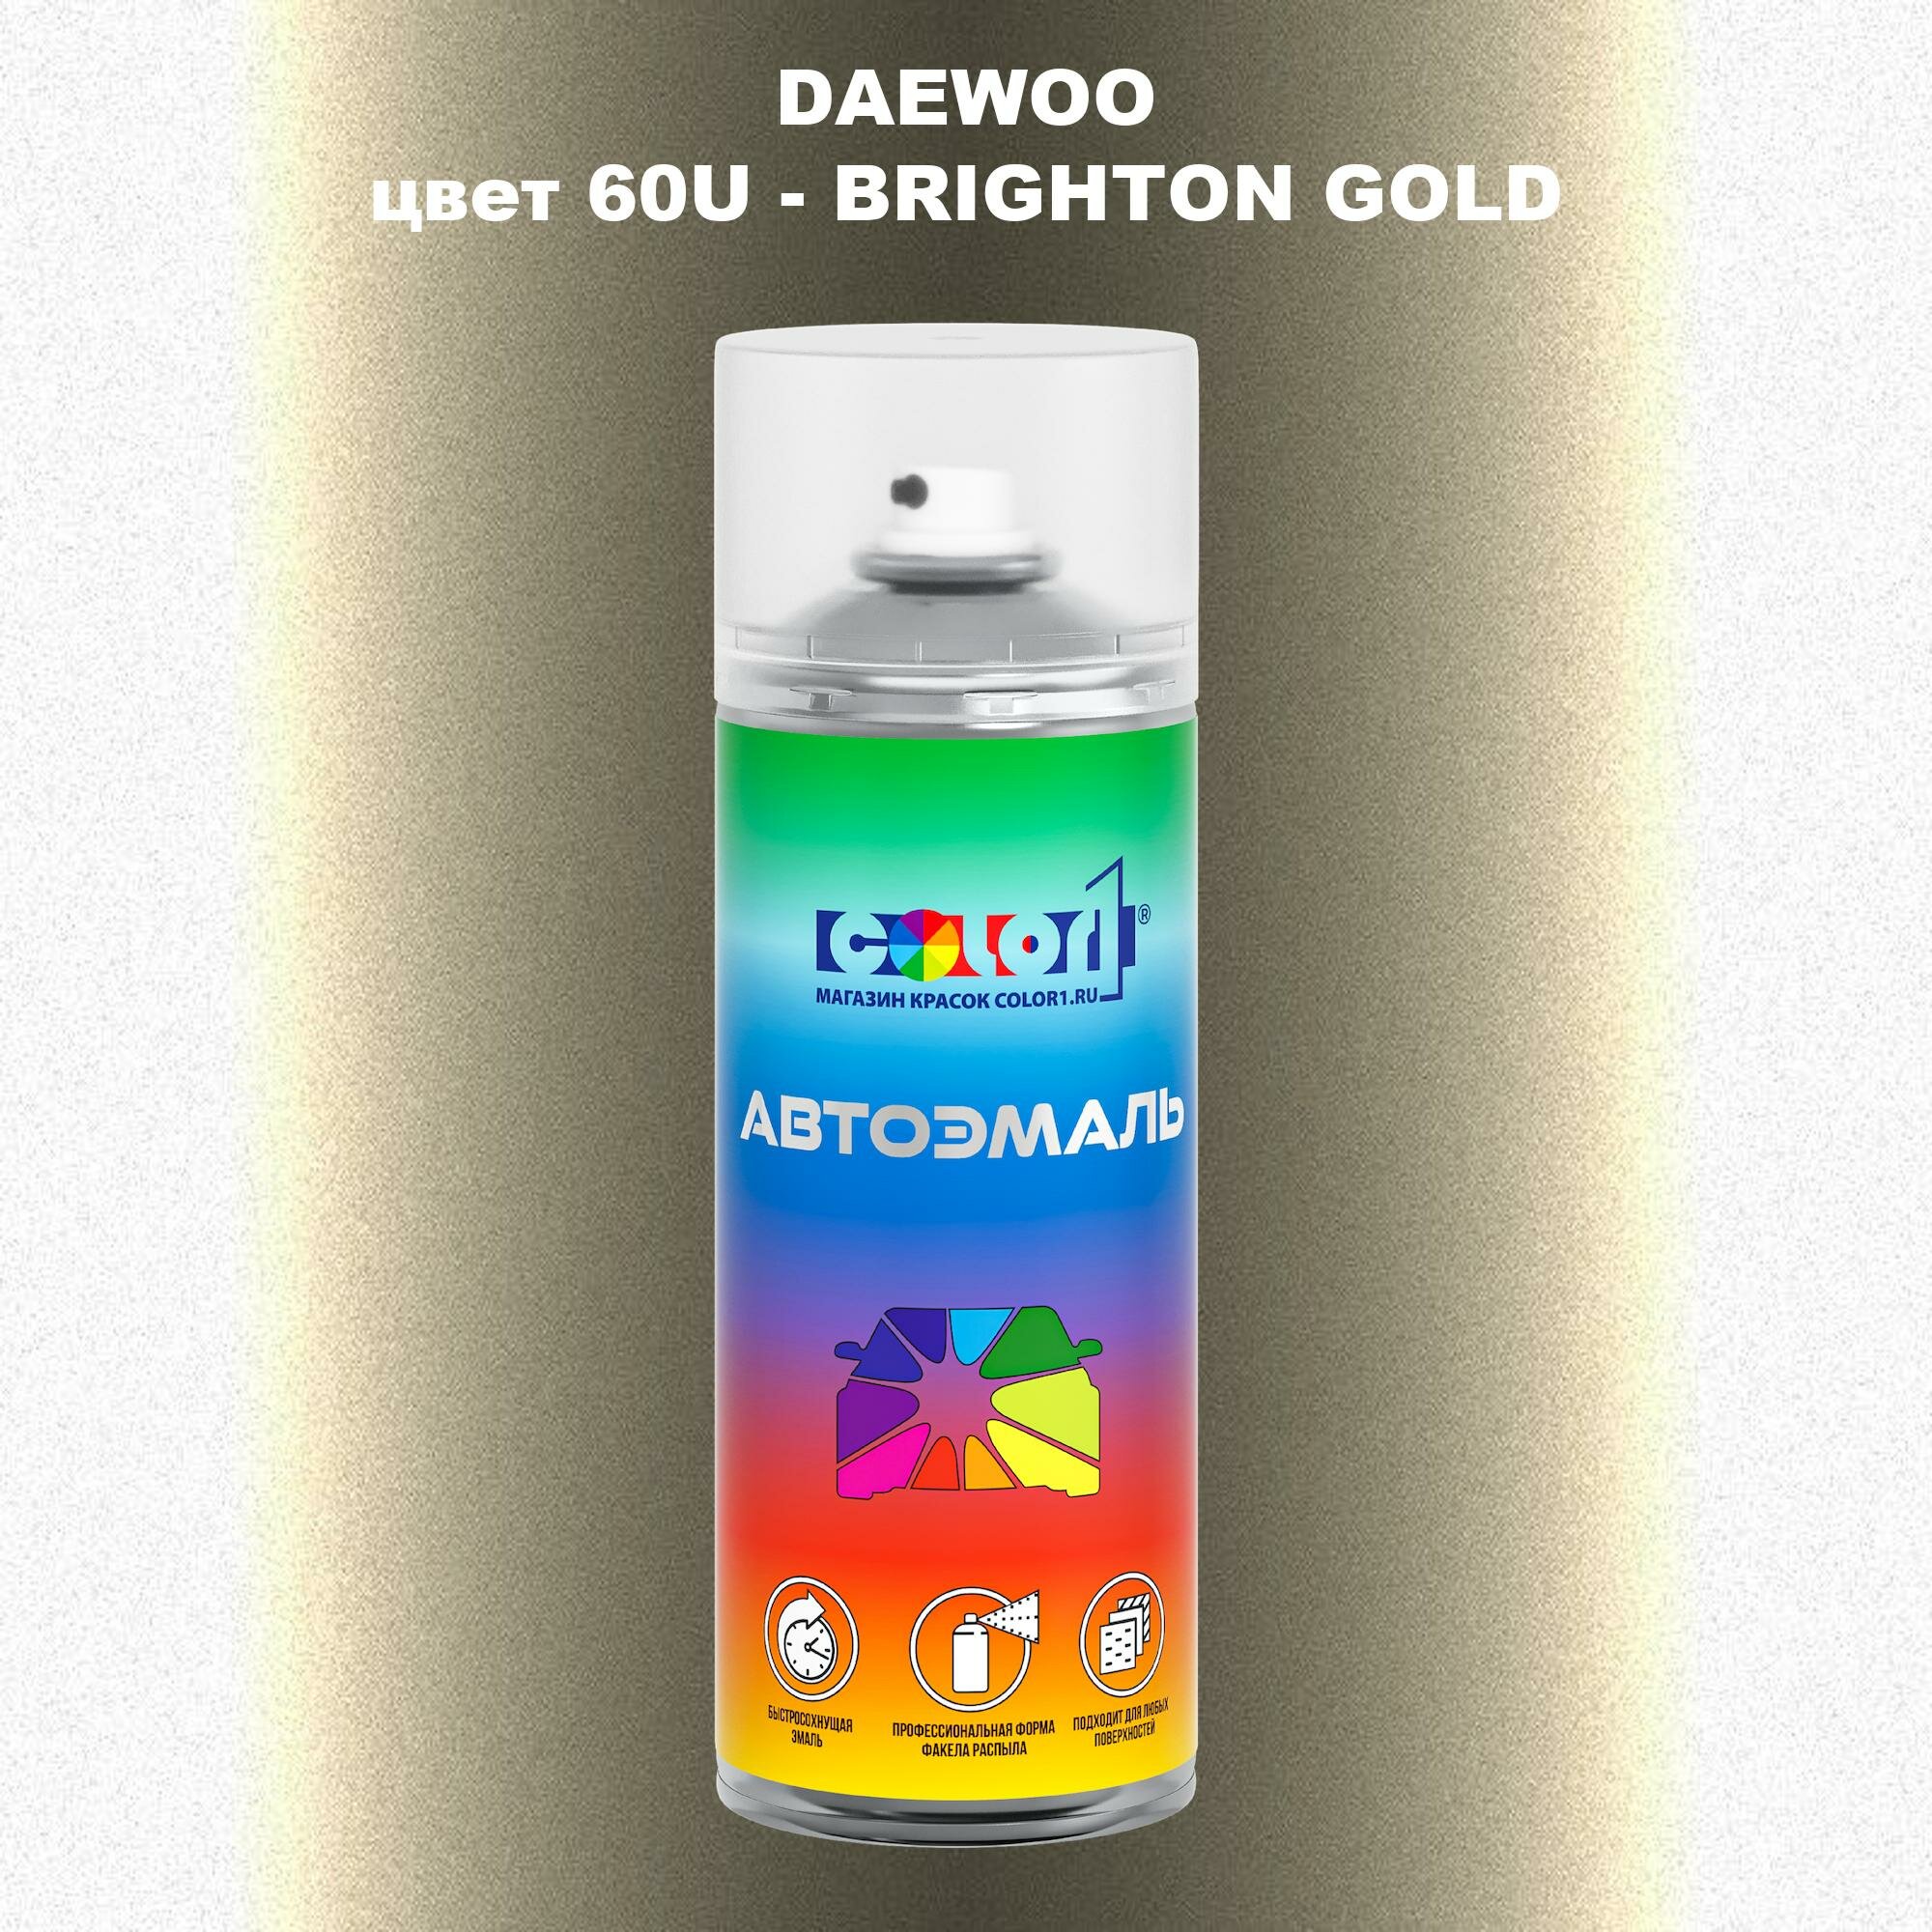 Аэрозольная краска COLOR1 для DAEWOO, цвет 60U - BRIGHTON GOLD